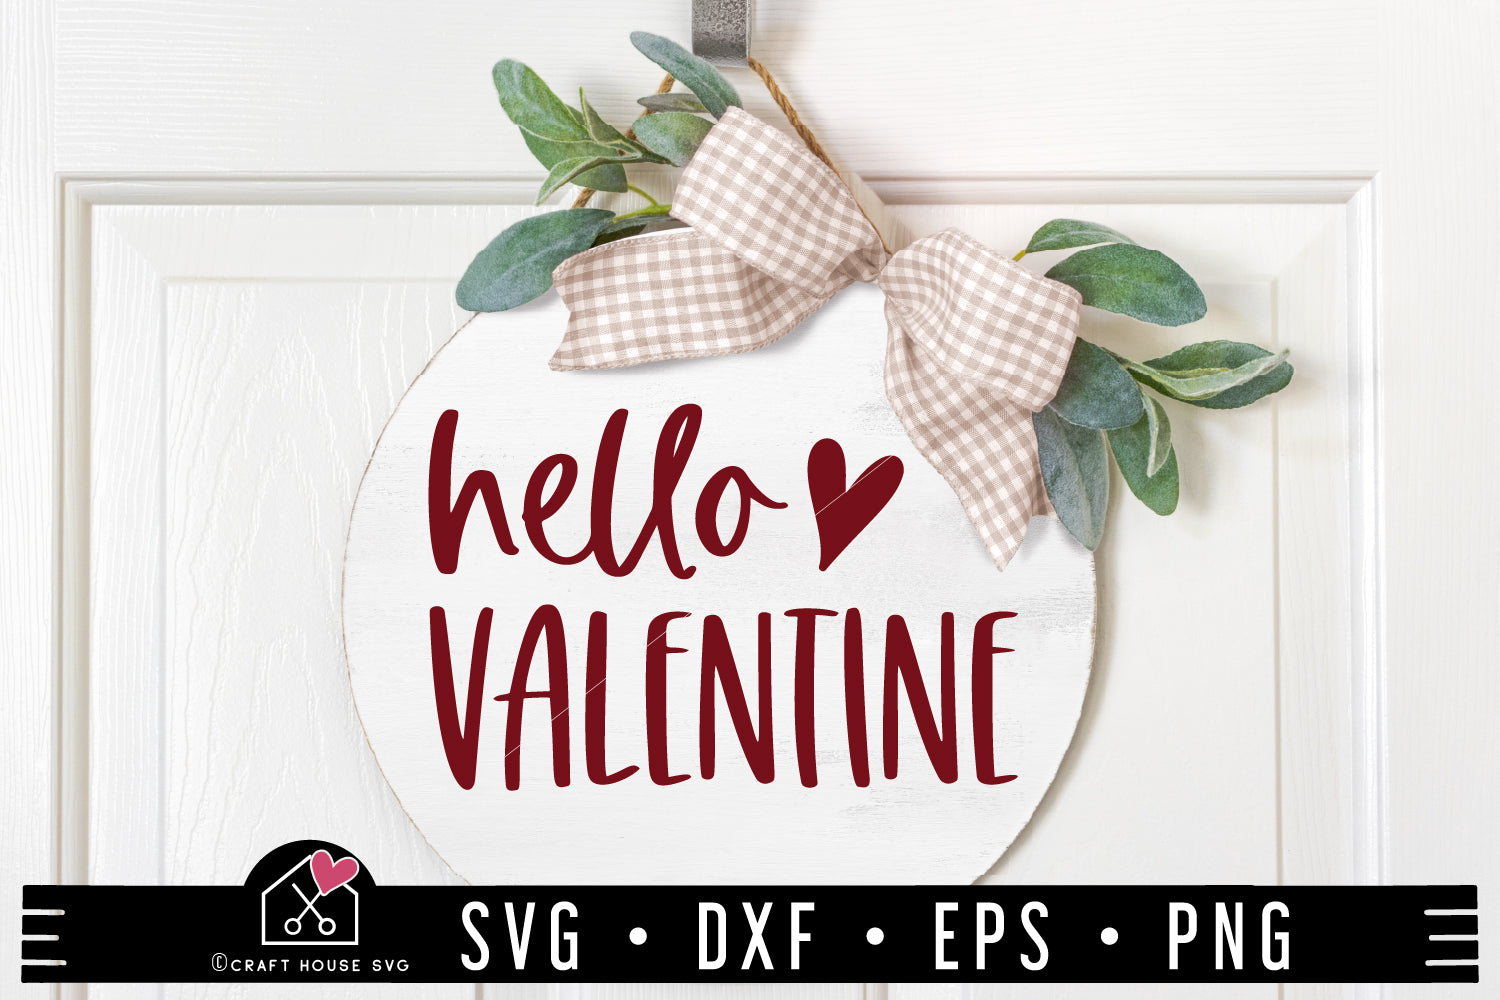 Hello Valentine SVG file | Valentine Heart Sign cut file 2122